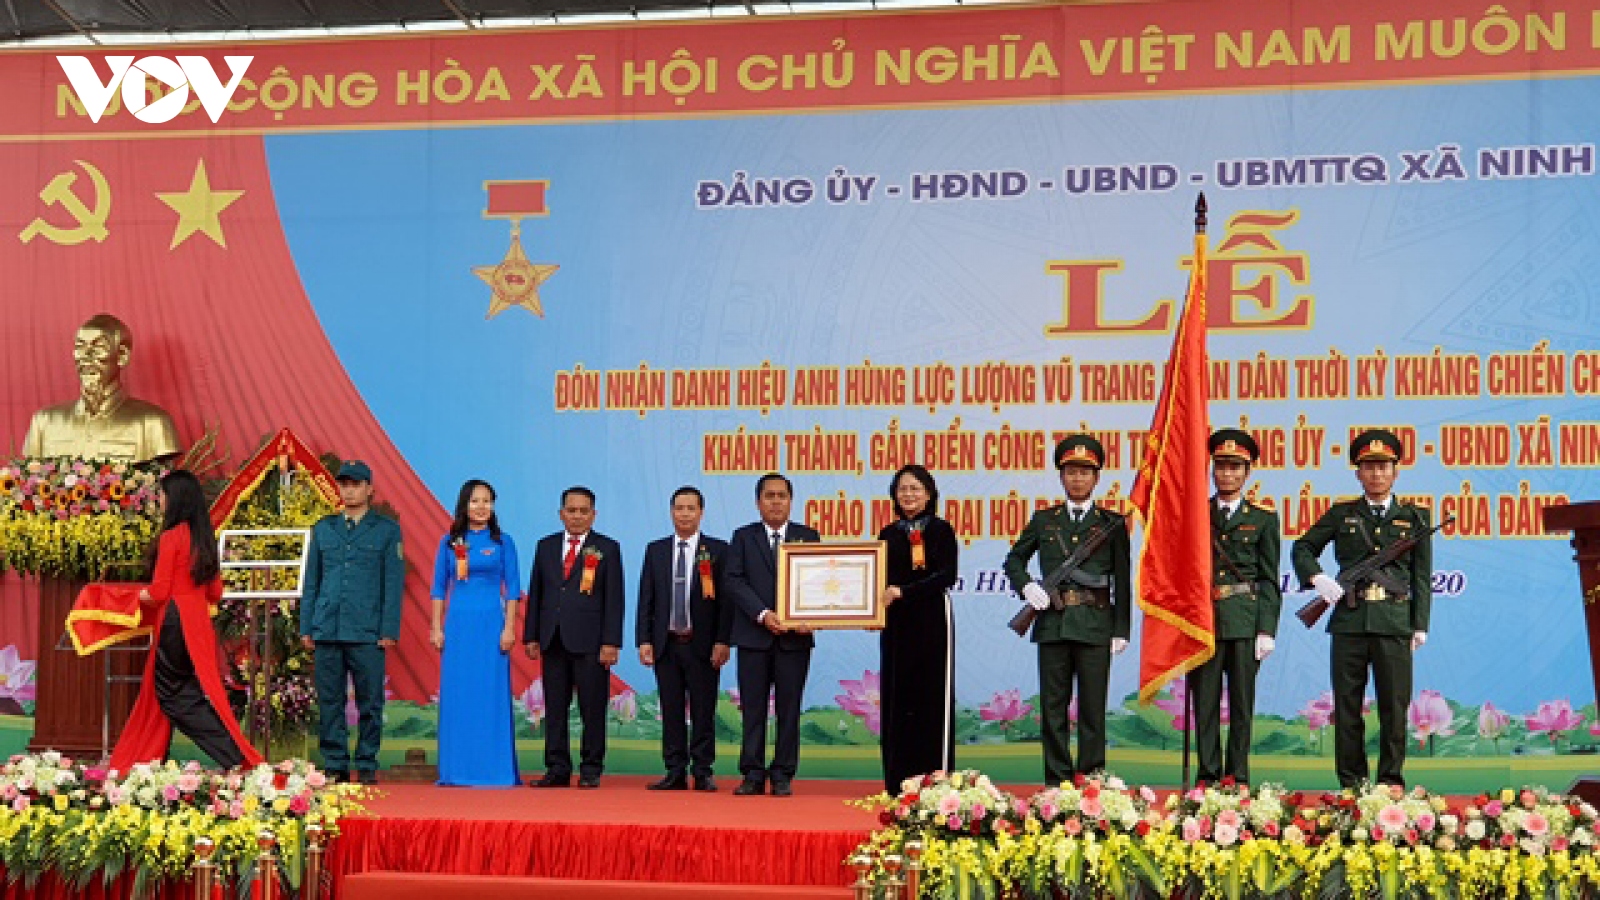 Phó Chủ tịch nước dự lễ đón nhận danh hiệu anh hùng lực lượng vũ trang xã Ninh Hiệp